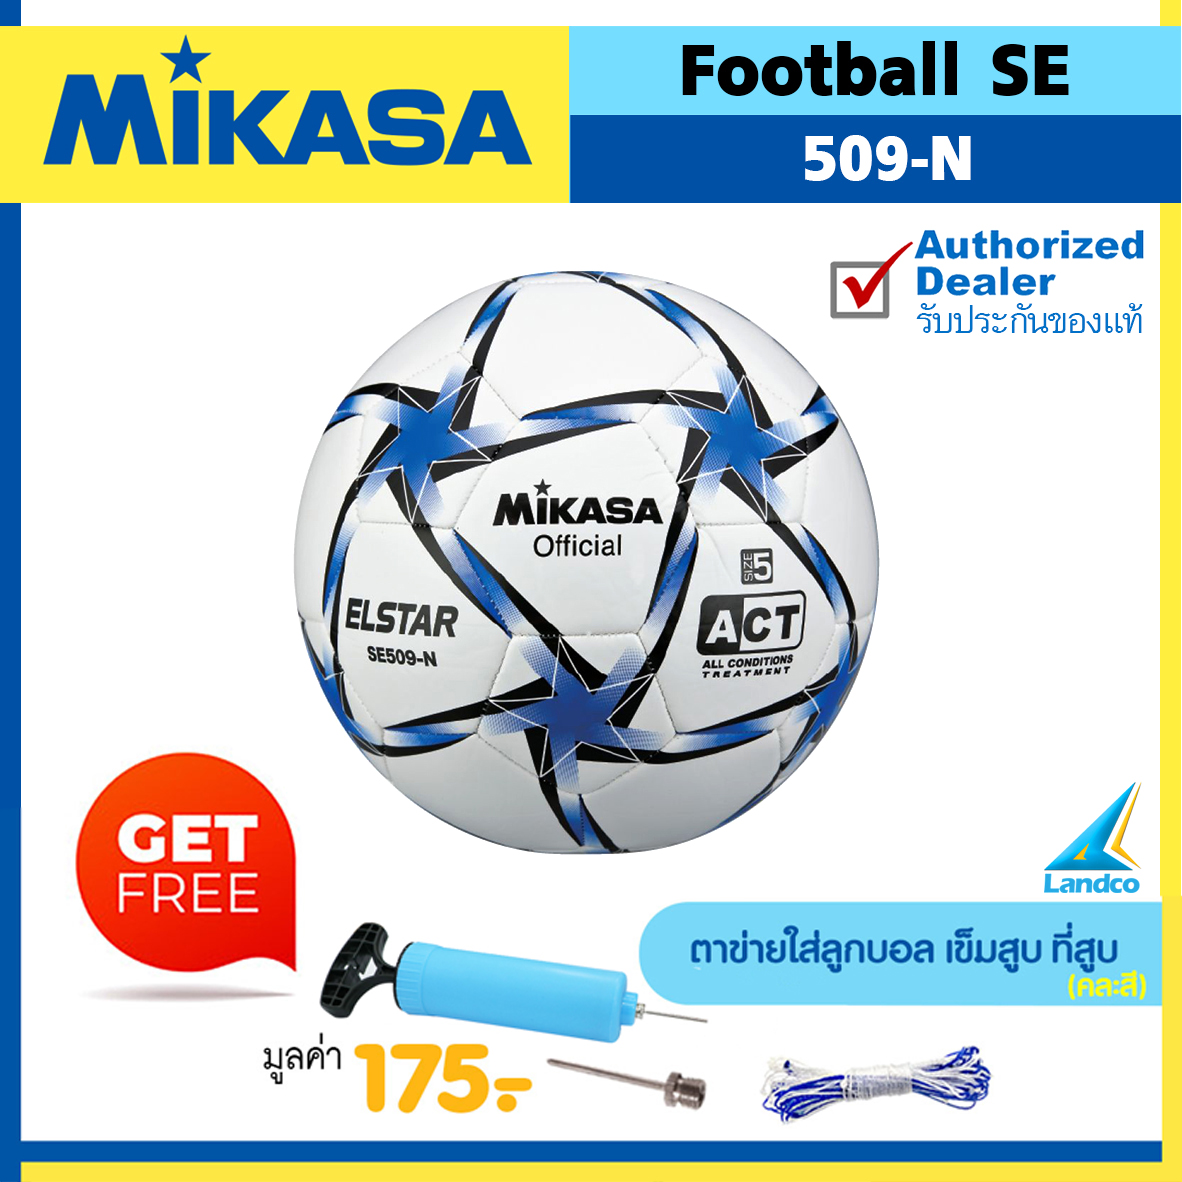 MIKASA ลูกฟุตบอลหนังเย็บ Football SE509 เบอร์ 5 (มี 5 สี) (แถมฟรี ตาข่ายใส่ลูกบอล + เข็มสูบ + สูบลมมือ SPL)